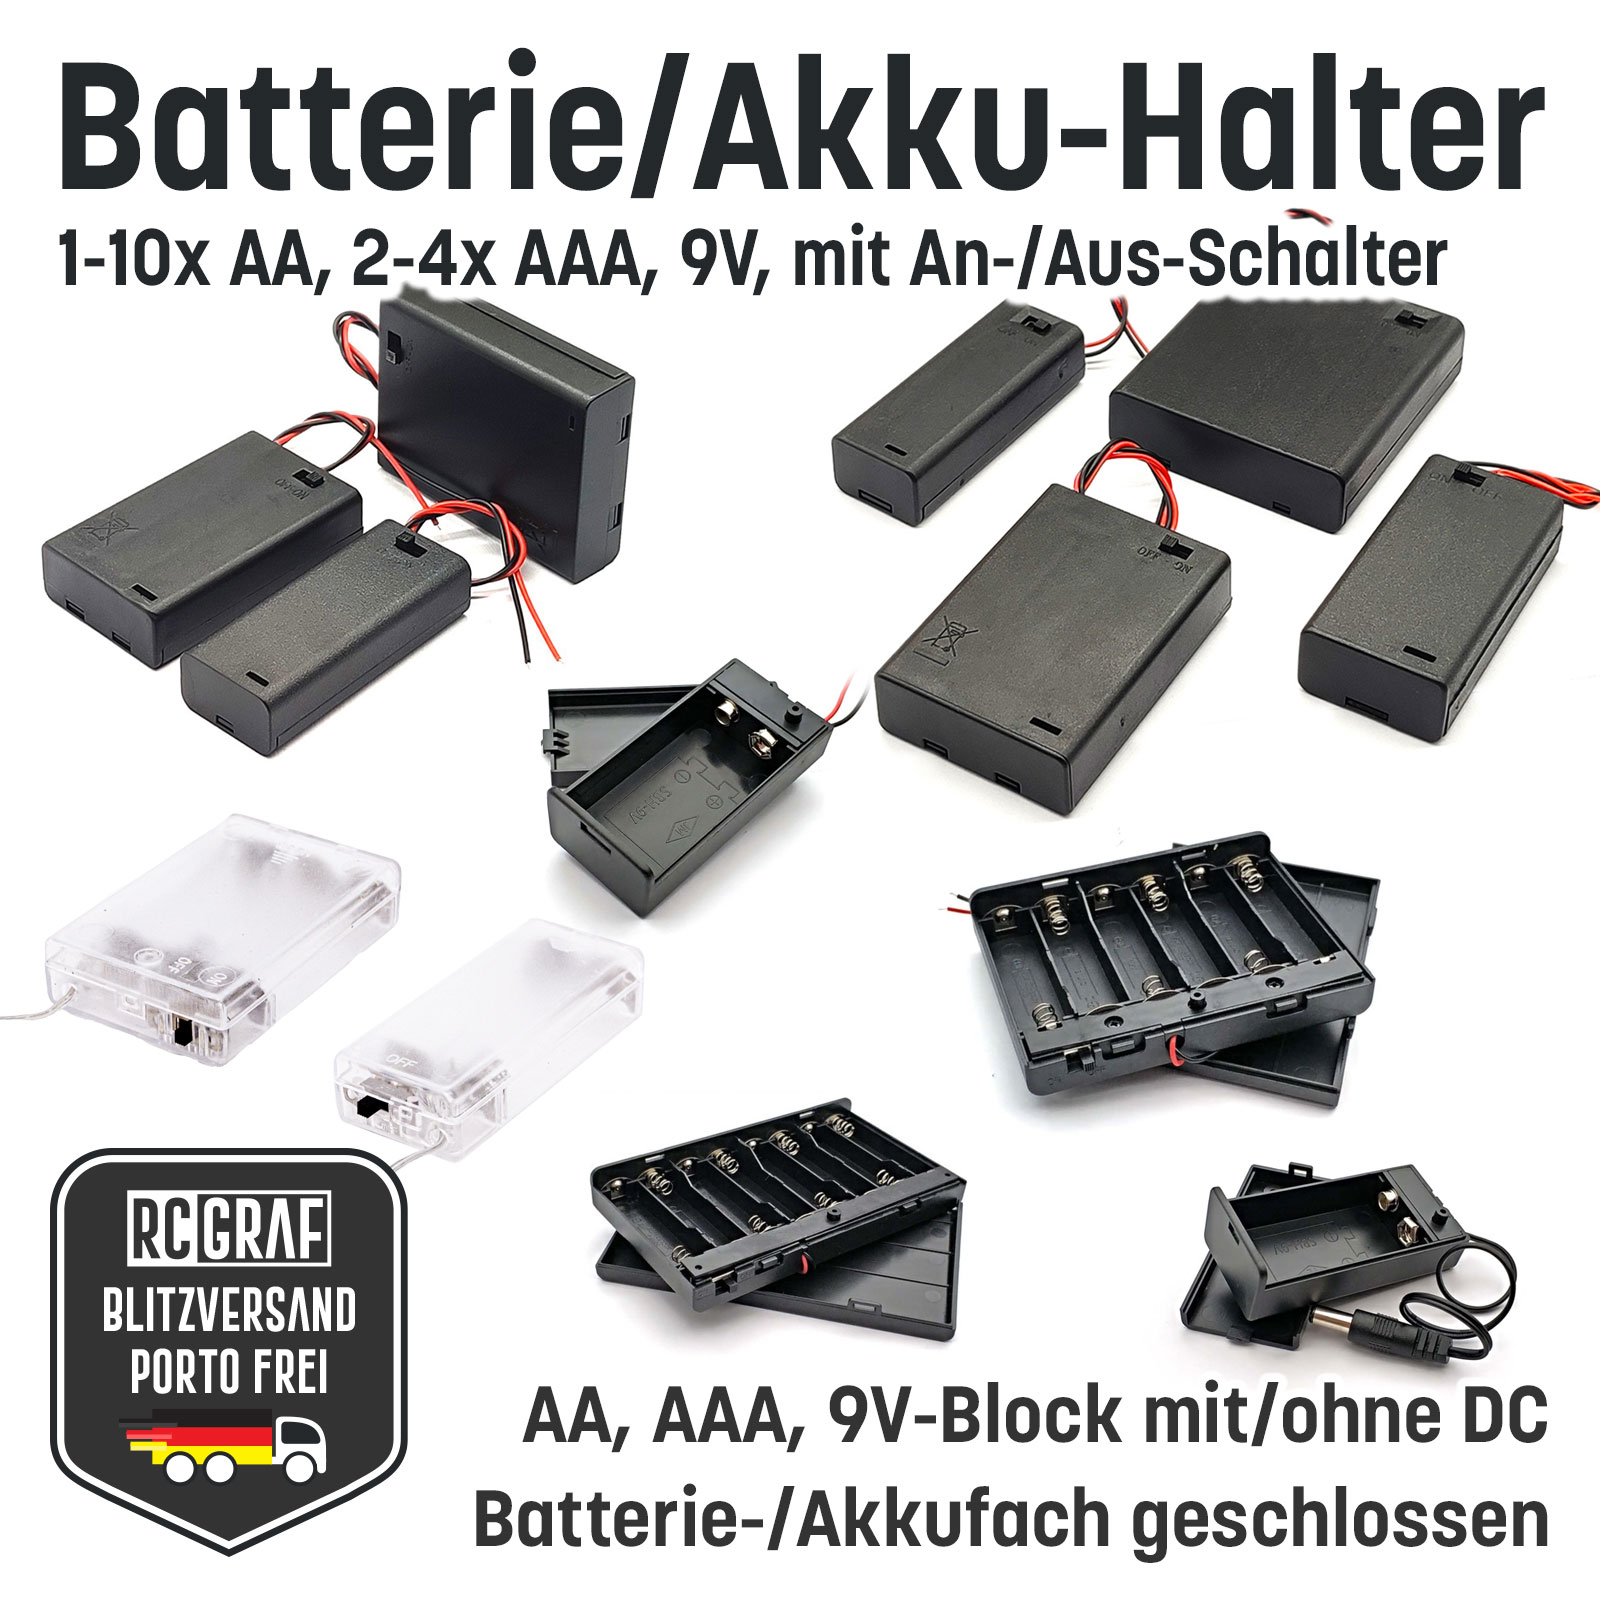 Batterie-/Akkuhalter AA AAA 9V Micro An Aus Schalter geschlossen, Batteriefach, Akkufach, Mignon, Batteriebox, Akkubox